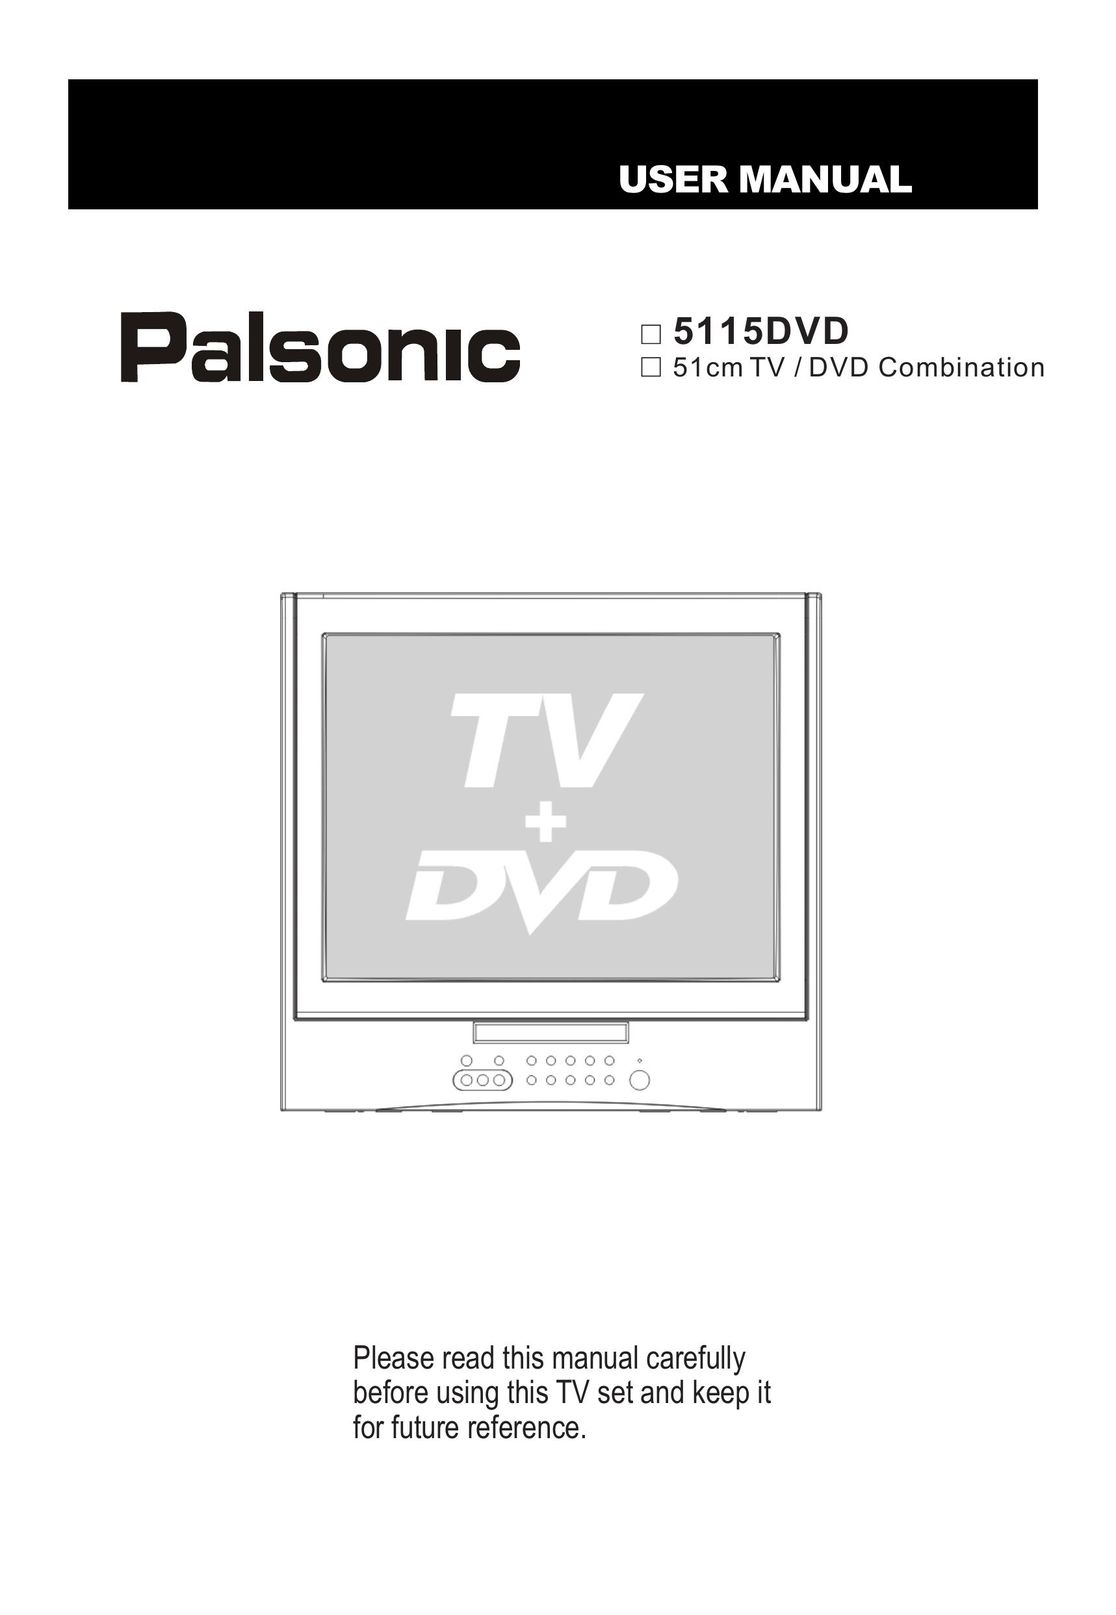 Haier 5115DVD TV DVD Combo User Manual